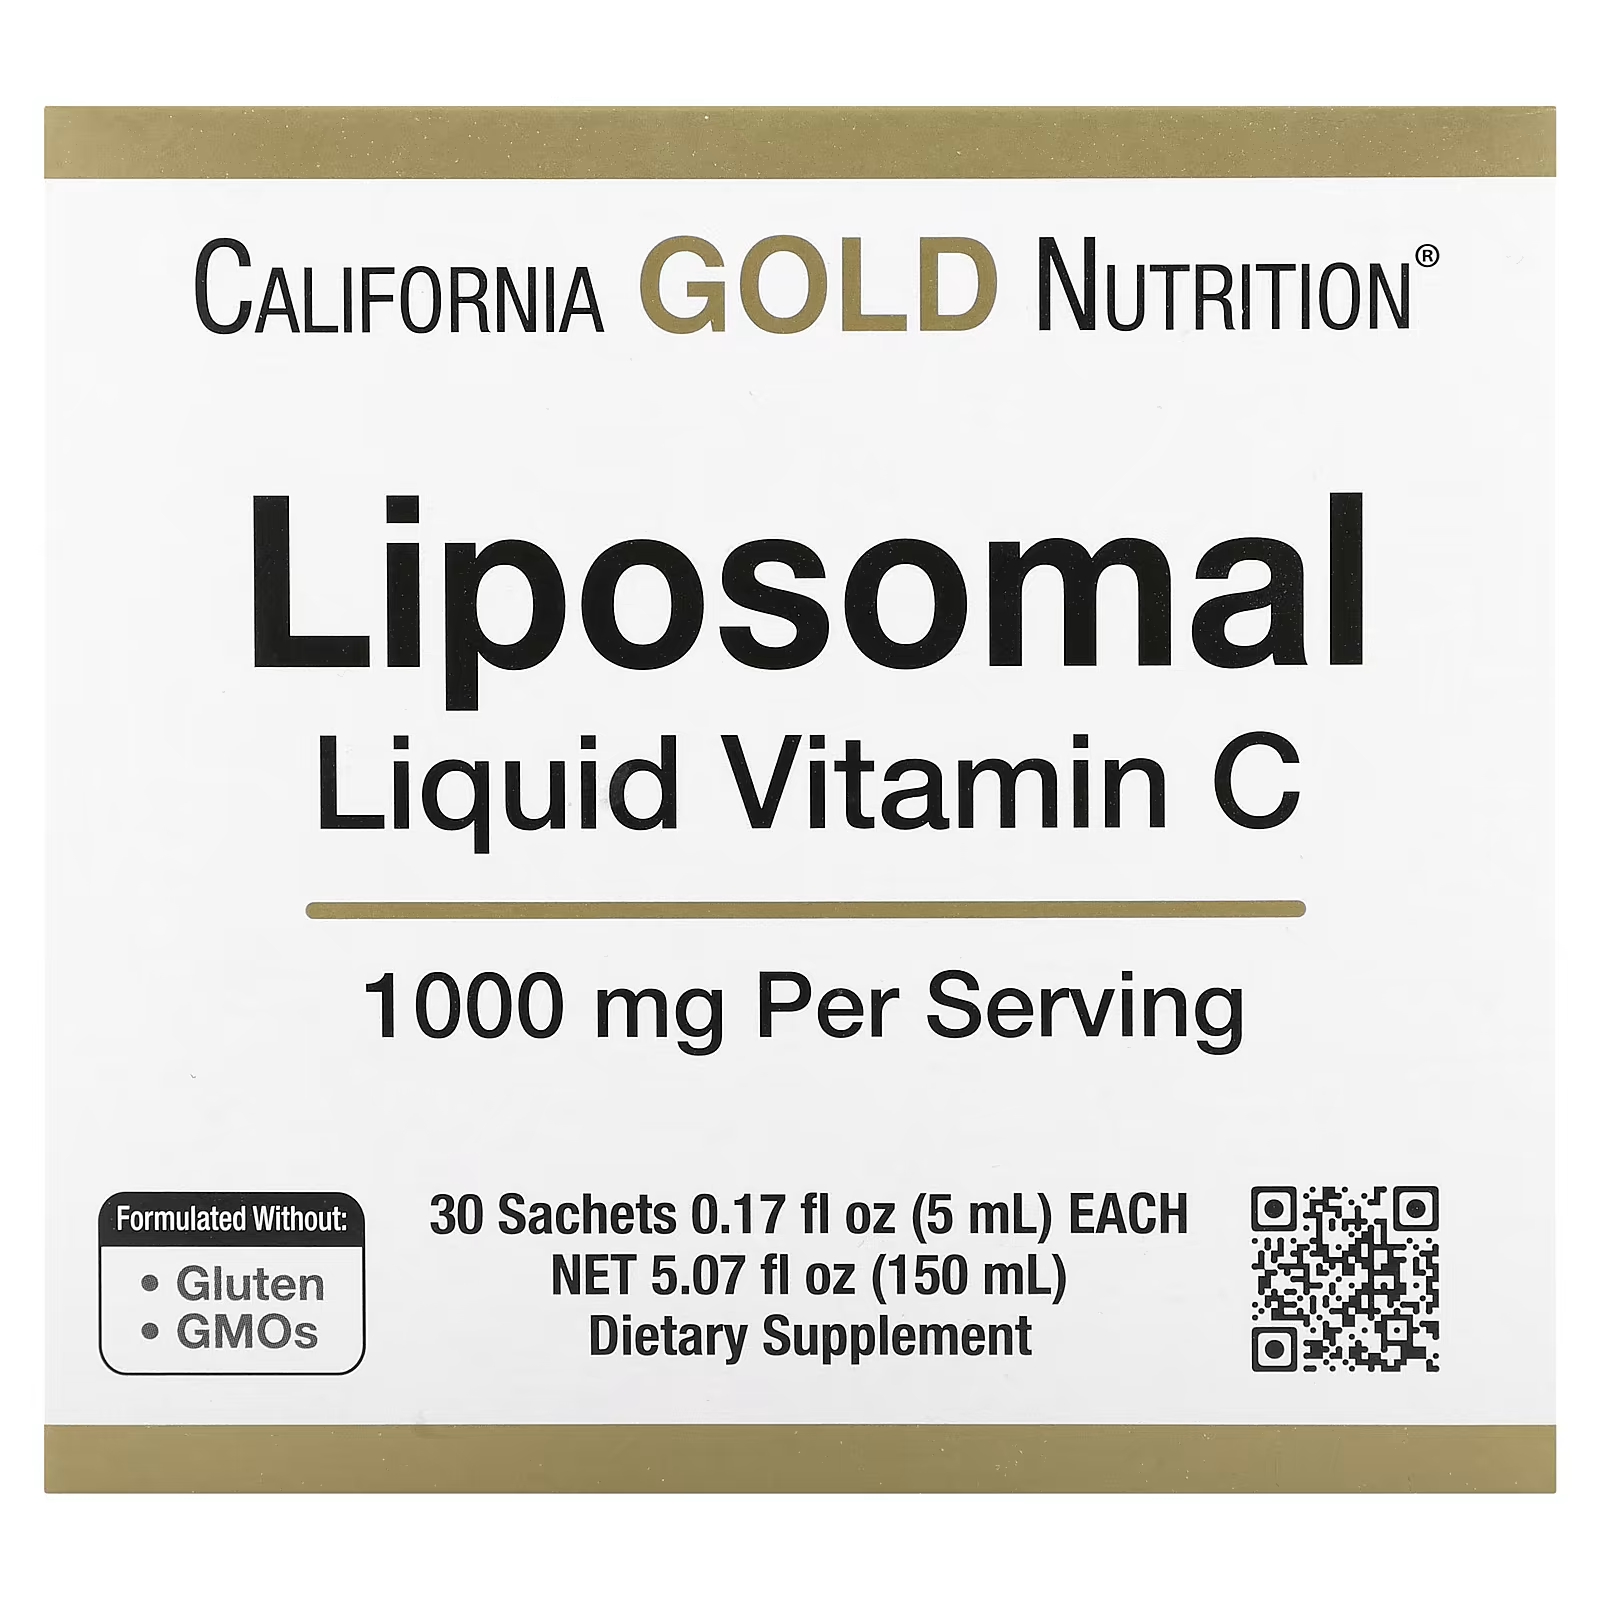 Липосомальный жидкий витамин С без вкуса, 1000 мг, 30 пакетиков California Gold Nutrition цена и фото